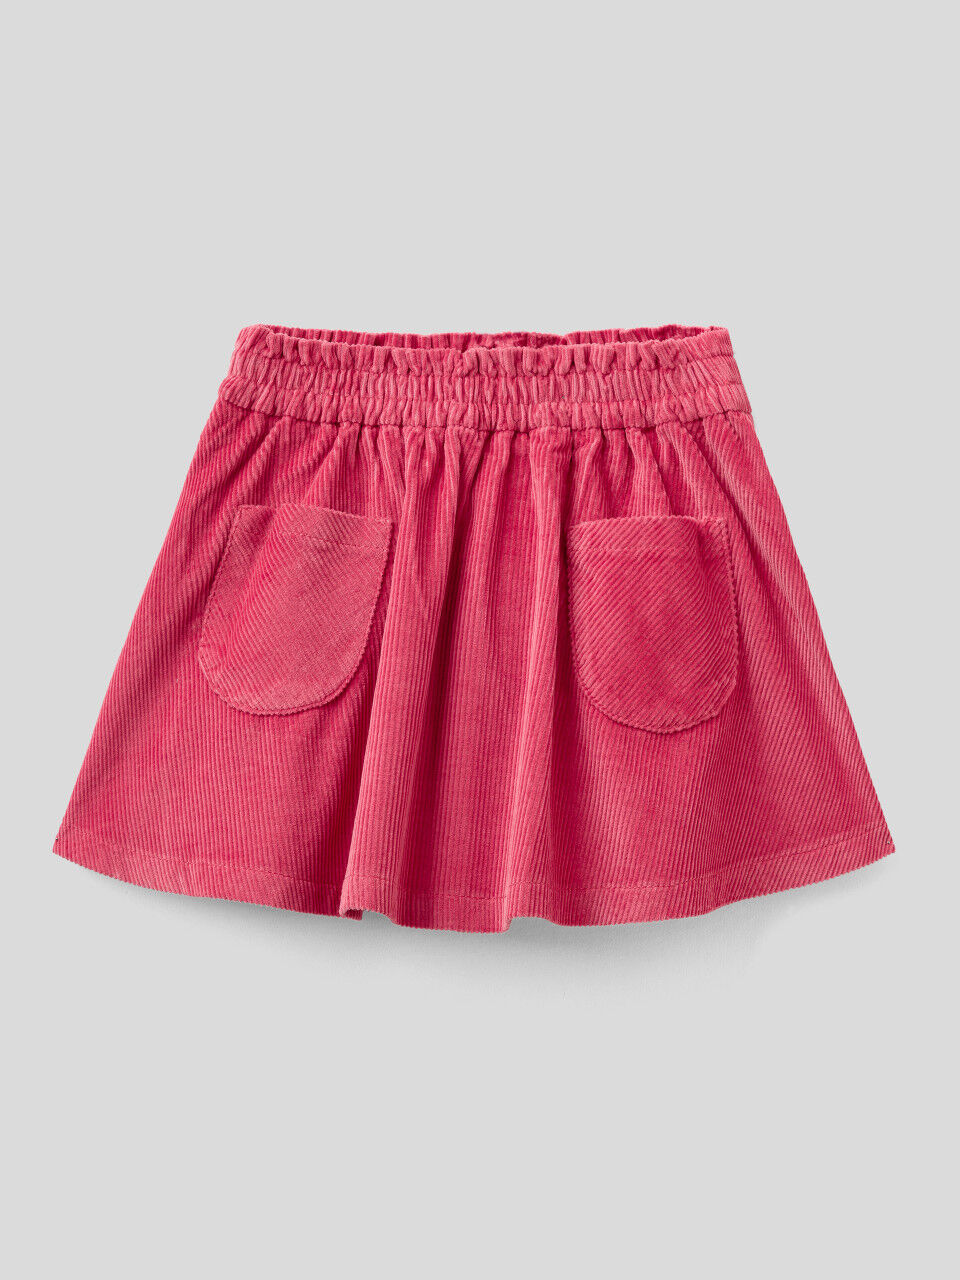 Velvet skirt with pockets